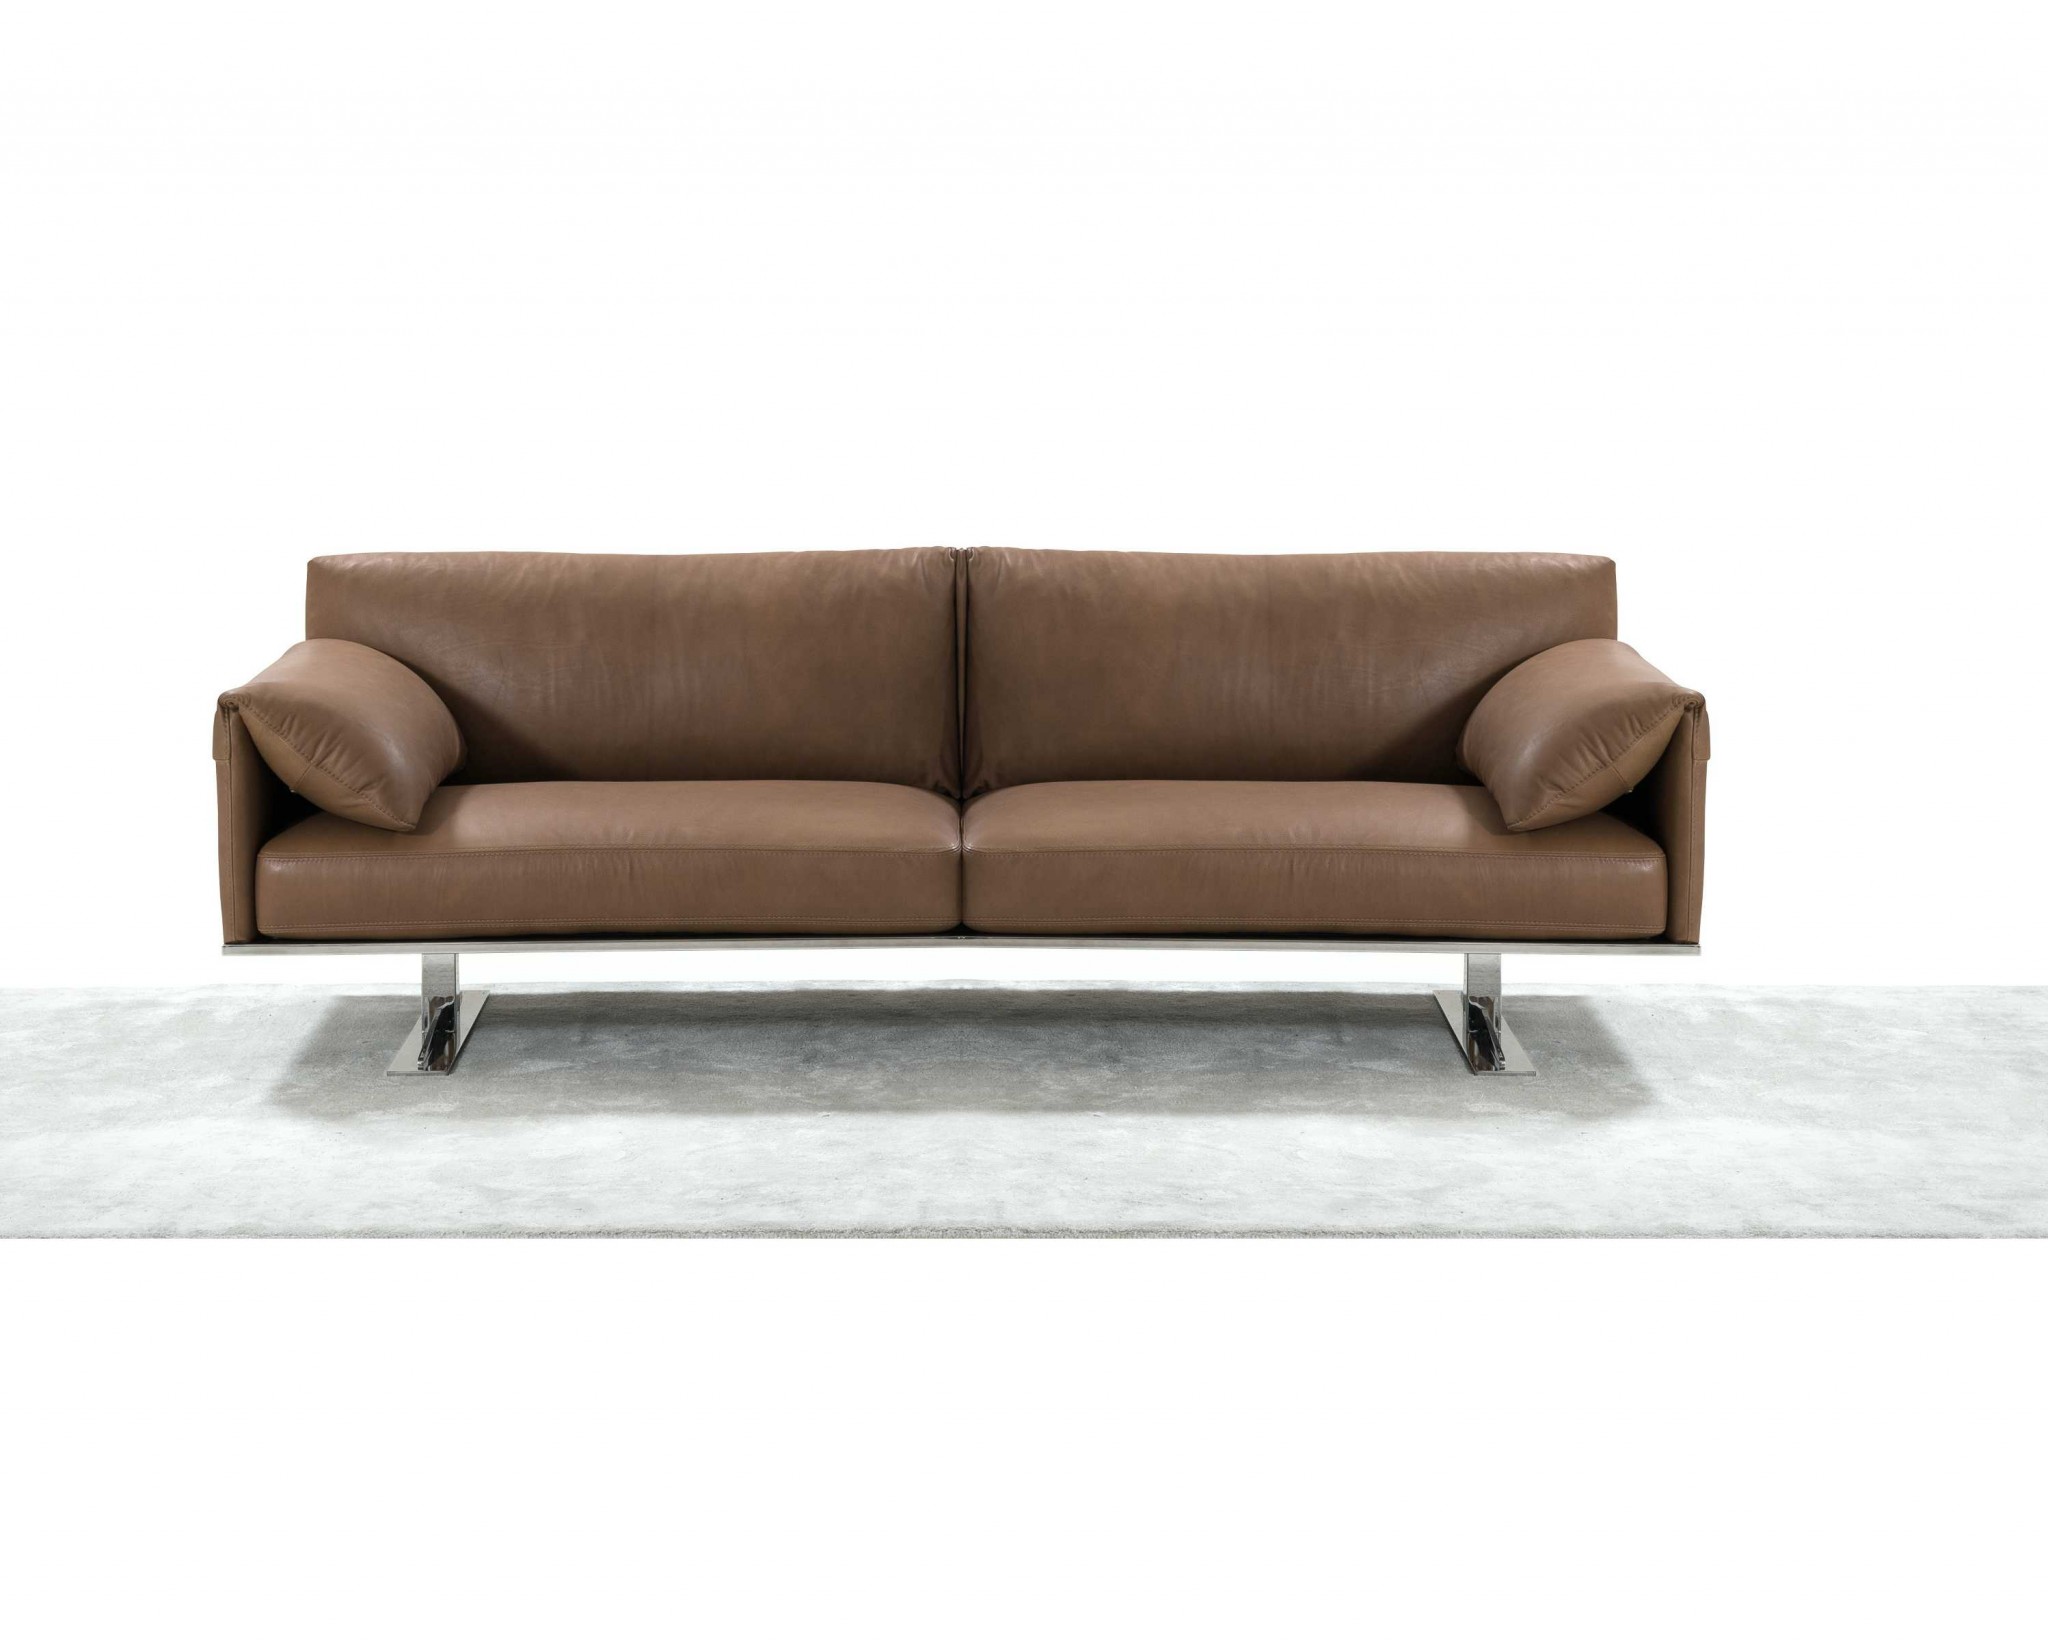 84" X 37" X 31" Taupe Leather Sofa